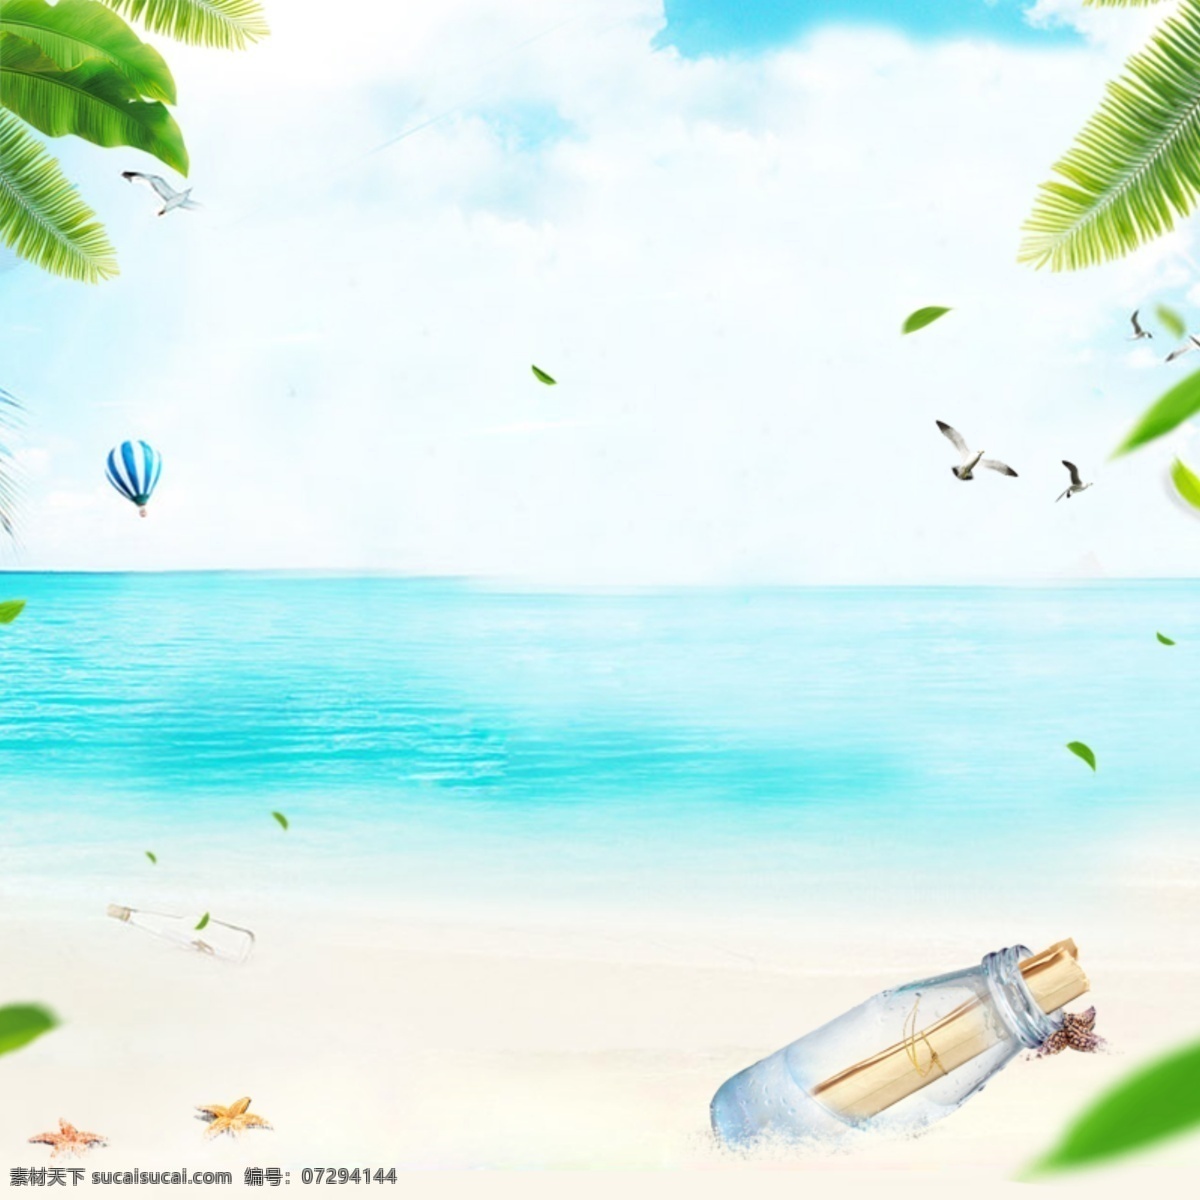 夏日 夏季 沙滩 主 图 海滩 主图 叶子 树叶 漂流瓶 海星 海水 海鸥 天空 蓝色背景 主图背景 背景 绿植 海边 蓝天 淘宝主图 海报